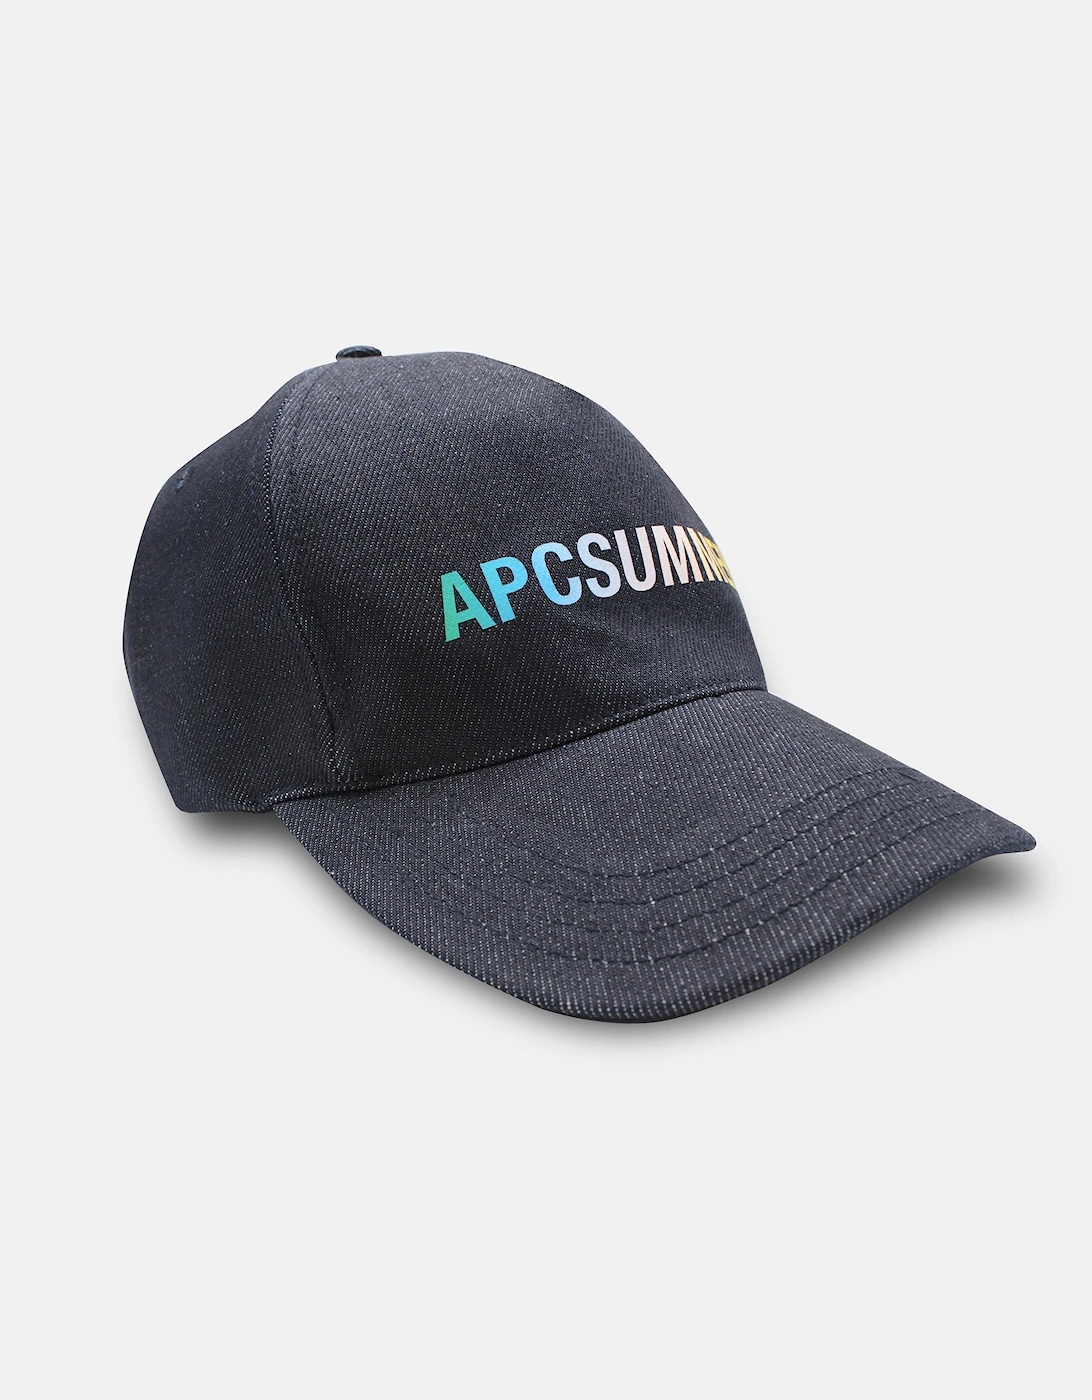 A.P.C. Summer Cap - Indigo, 5 of 4